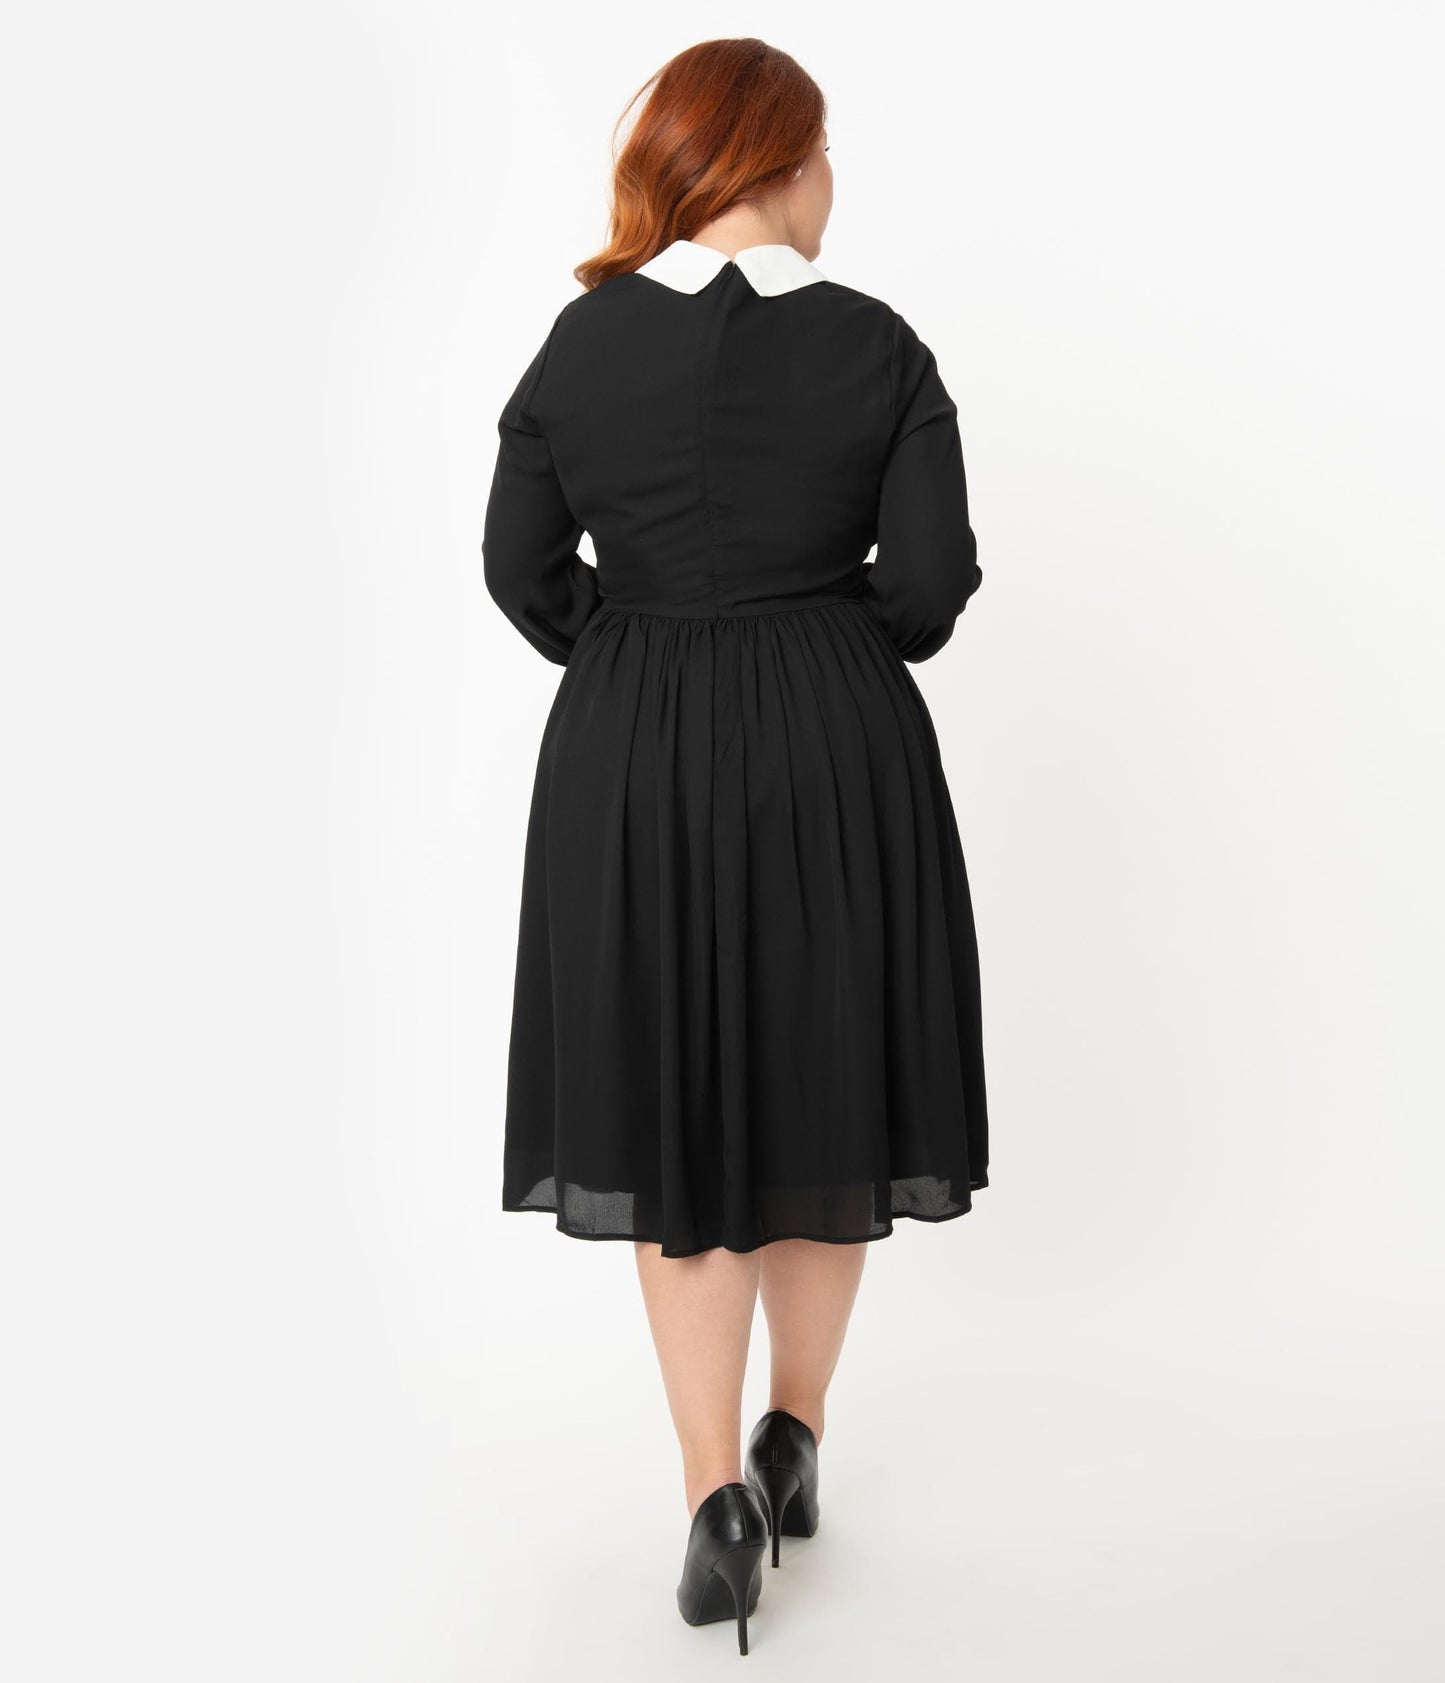 Unique Vintage Plus Size 1940s Style Black & White Deirdre Shirt Dress